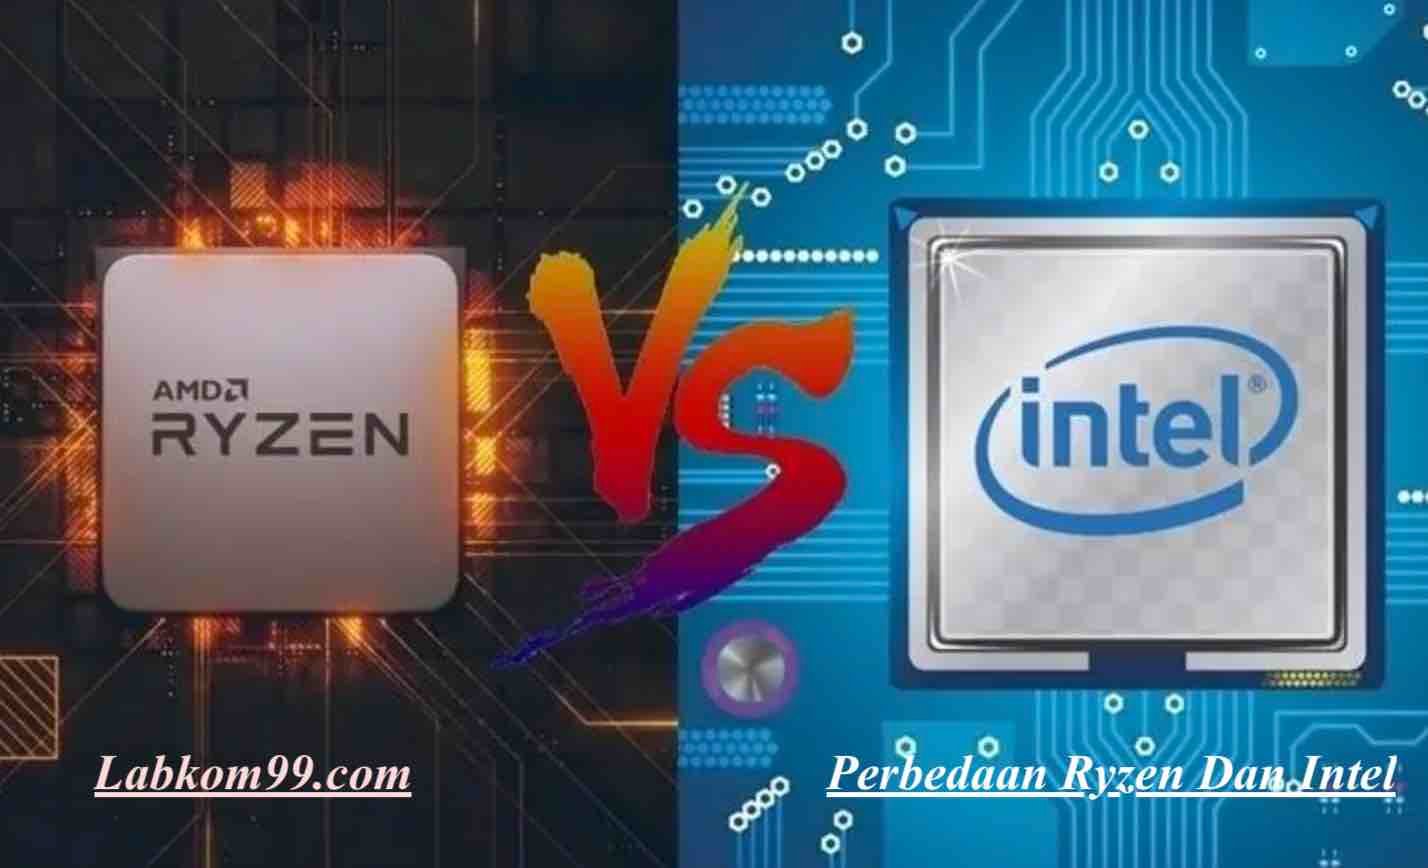 Perbedaan Ryzen Dan Intel